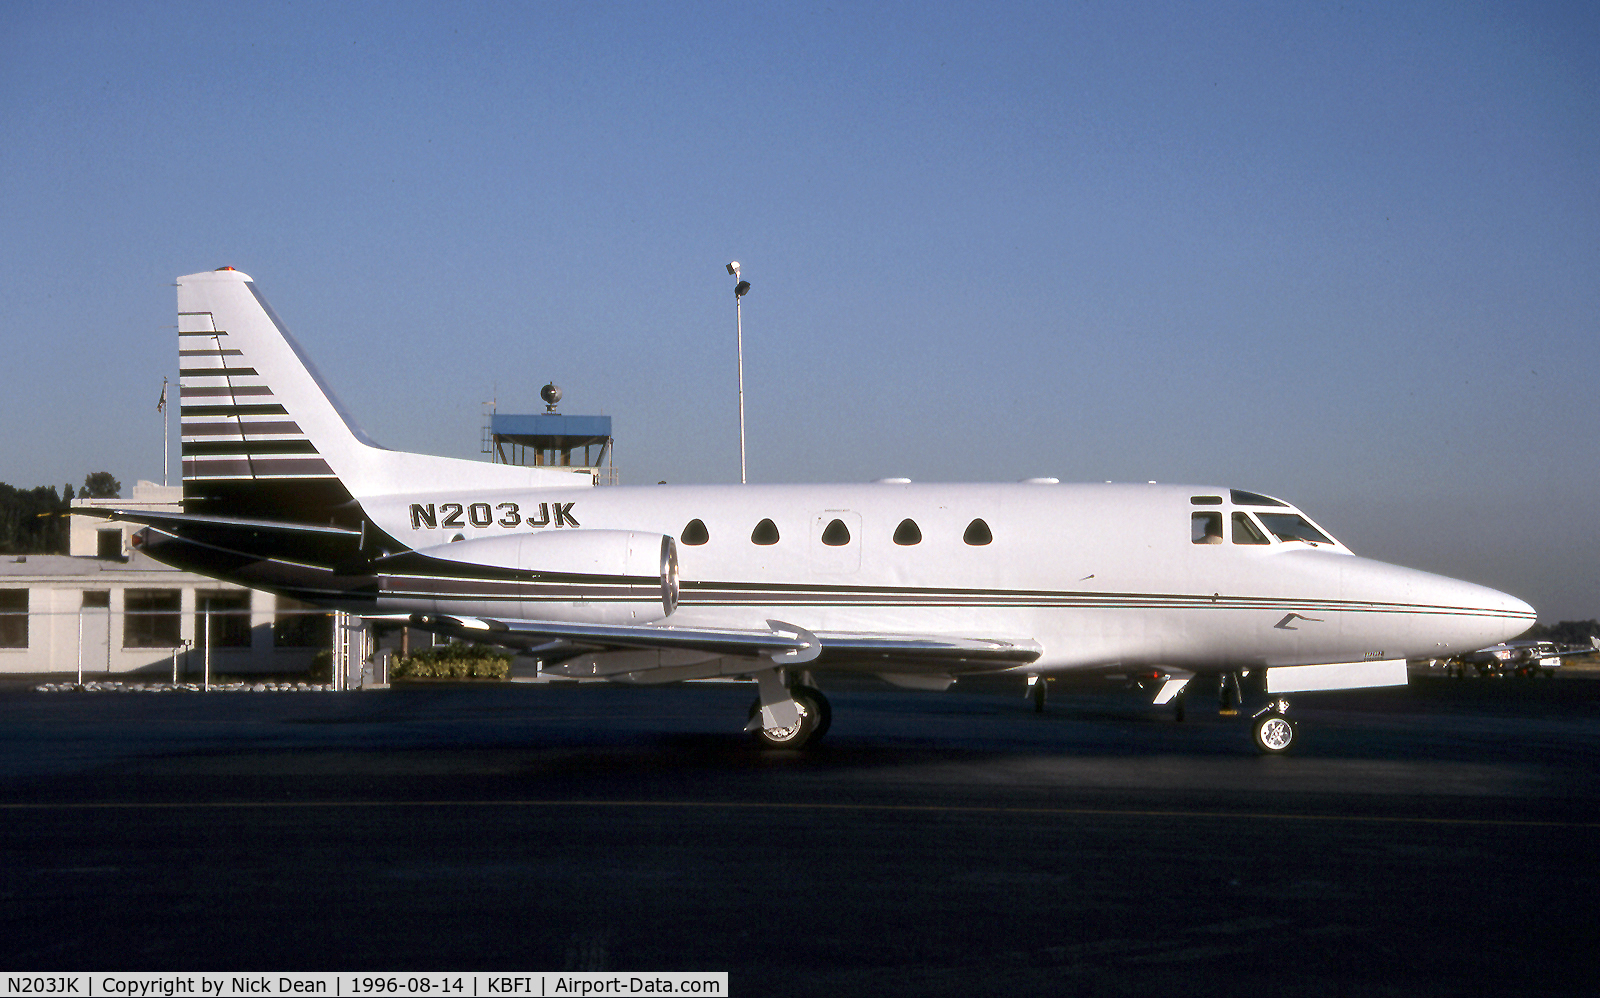 N203JK, 1980 North American Sabre 65 C/N 465-39, KBFI